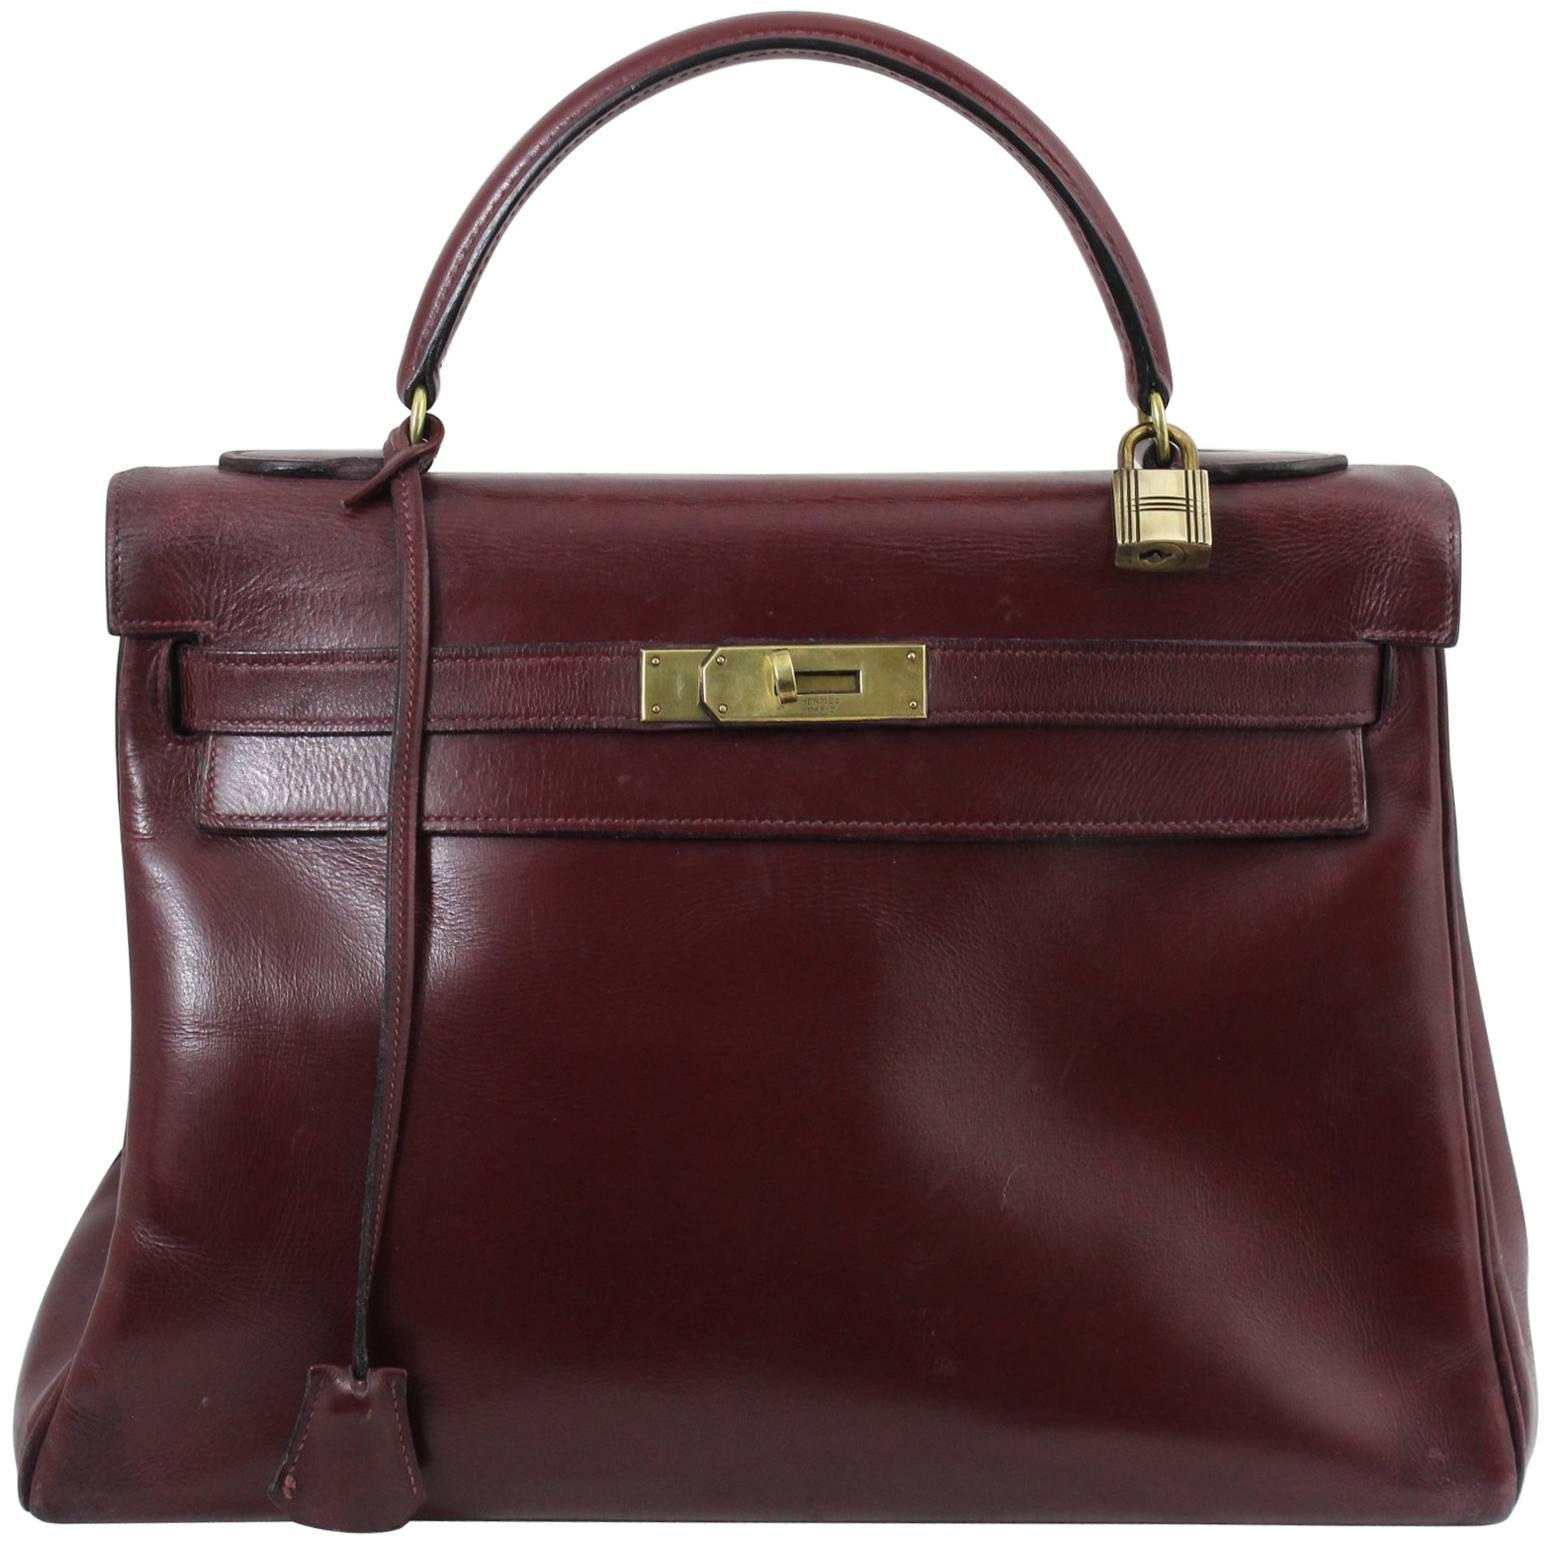 1960 Hermes Vintage Kelly Bag in Burgundy Leather with Golden Hardware